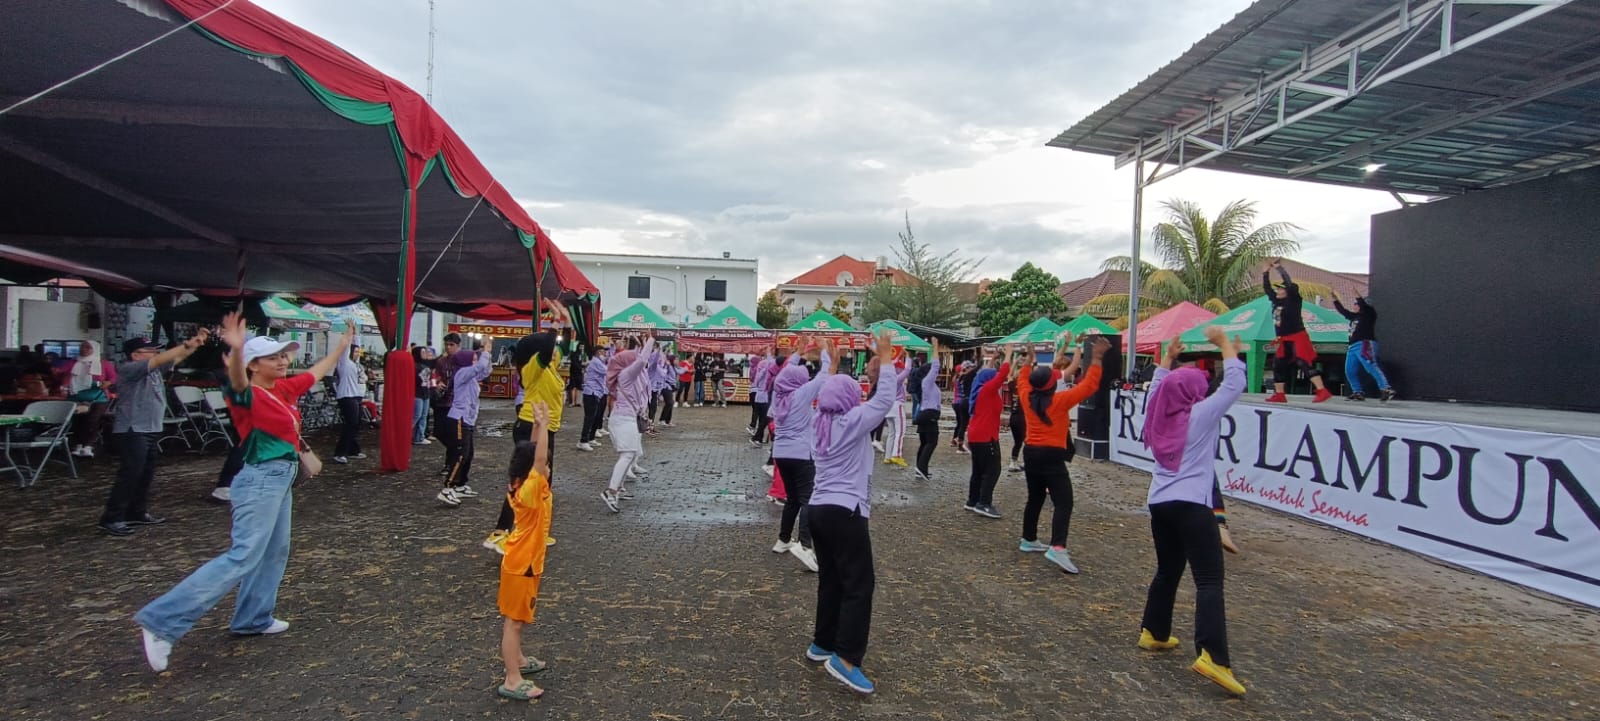 Suhu Yurike Buka Zumba di Nobar Piala Dunia dan Fun Food Festival Radar Lampung